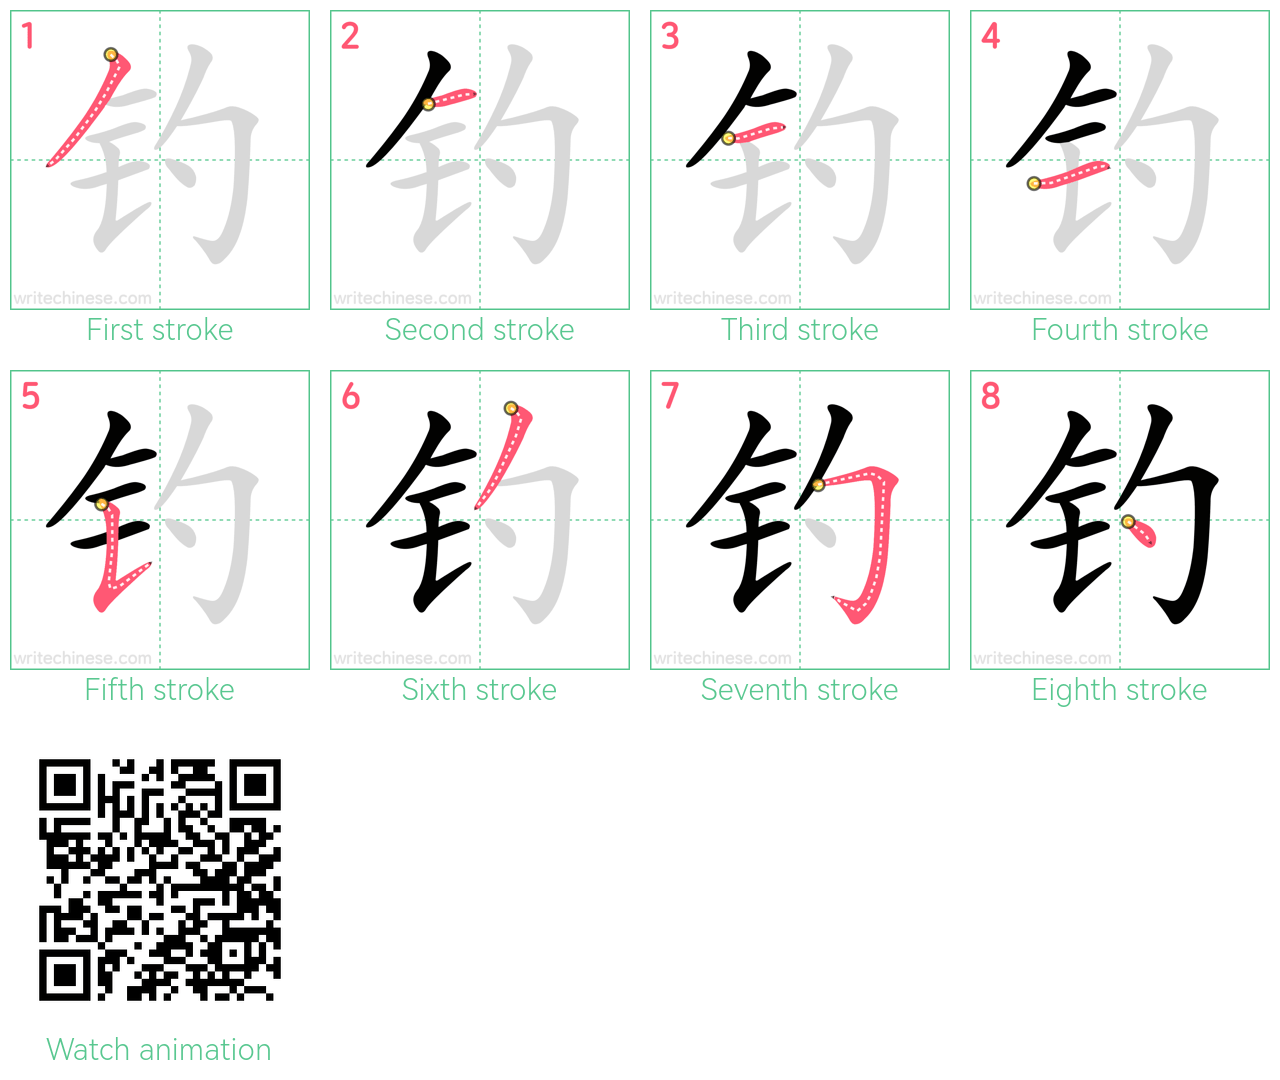 钓 step-by-step stroke order diagrams